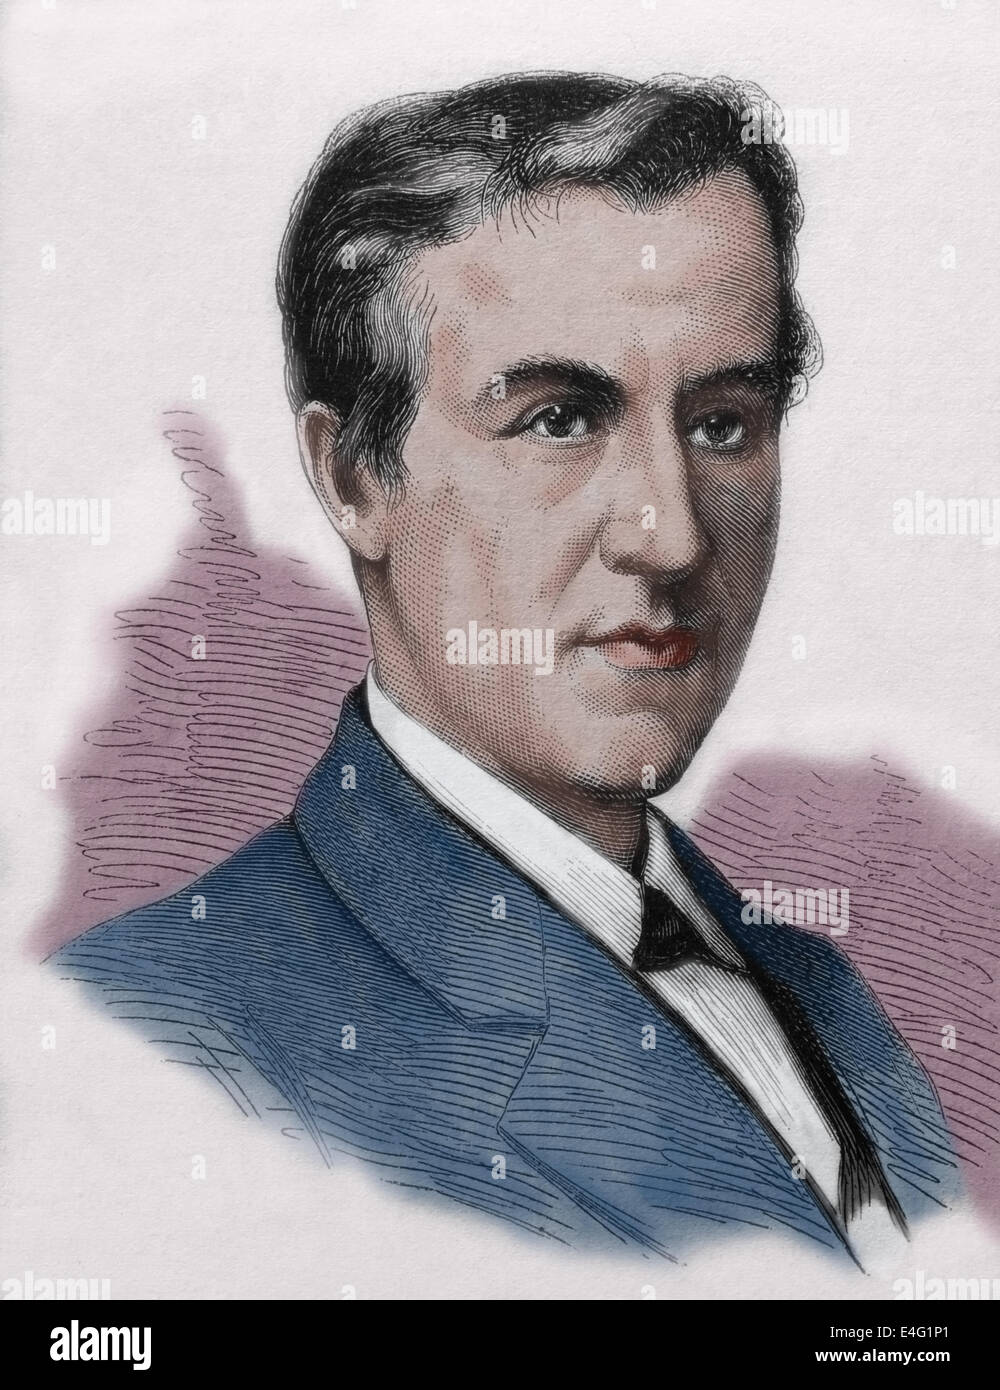 Thomas Alva Edison (1847 ð 1931). L'inventeur américain et homme d'affaires. Gravure par Tourfaut, 1980, publié en Espagne. La couleur. Banque D'Images